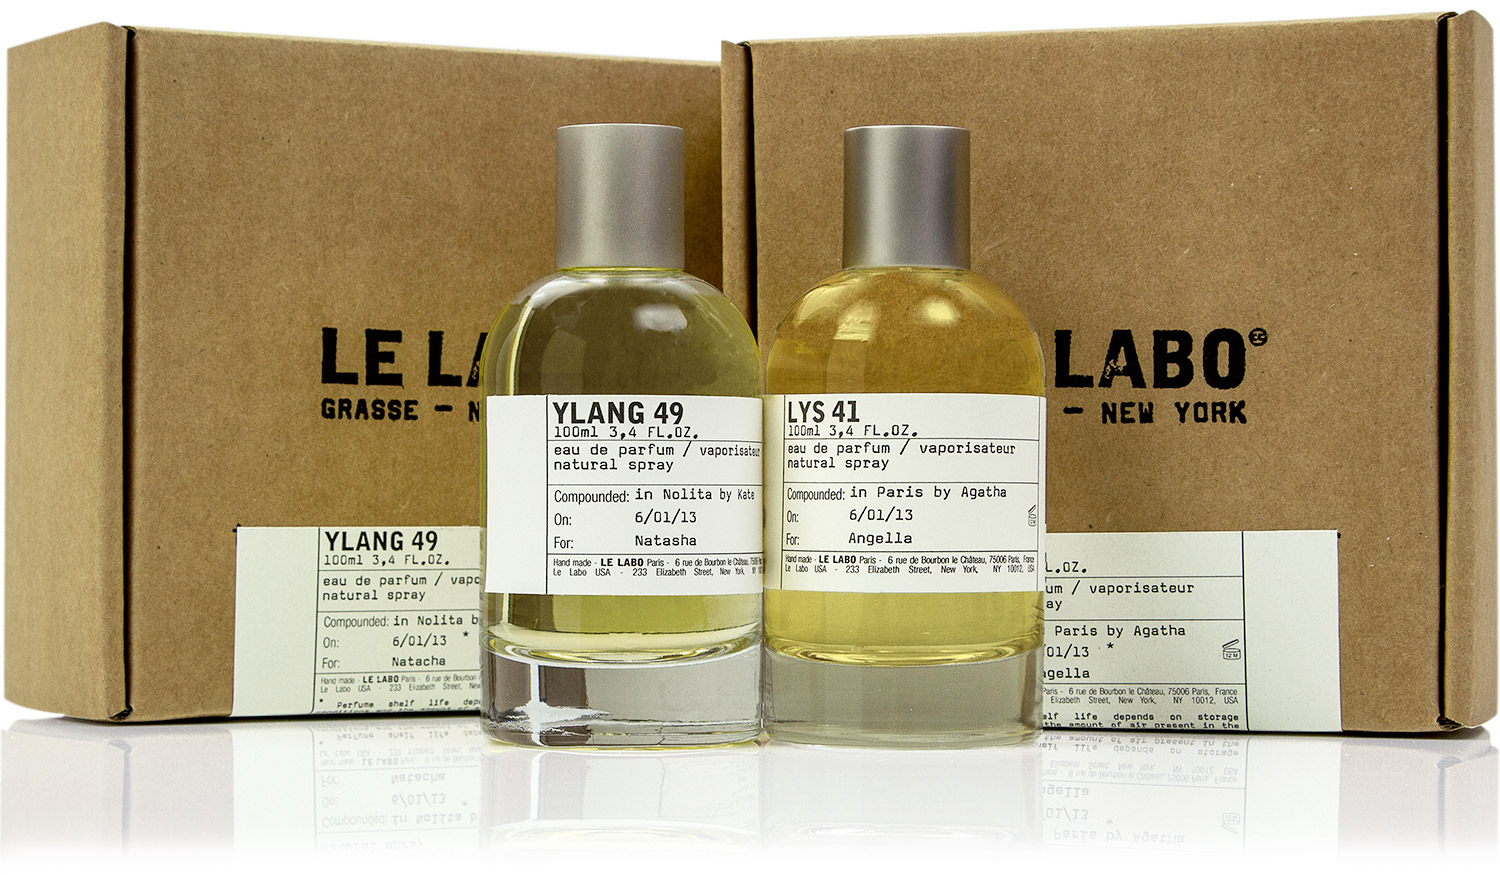 Lys 41 Le Labo perfume - a fragrância Feminino 2013